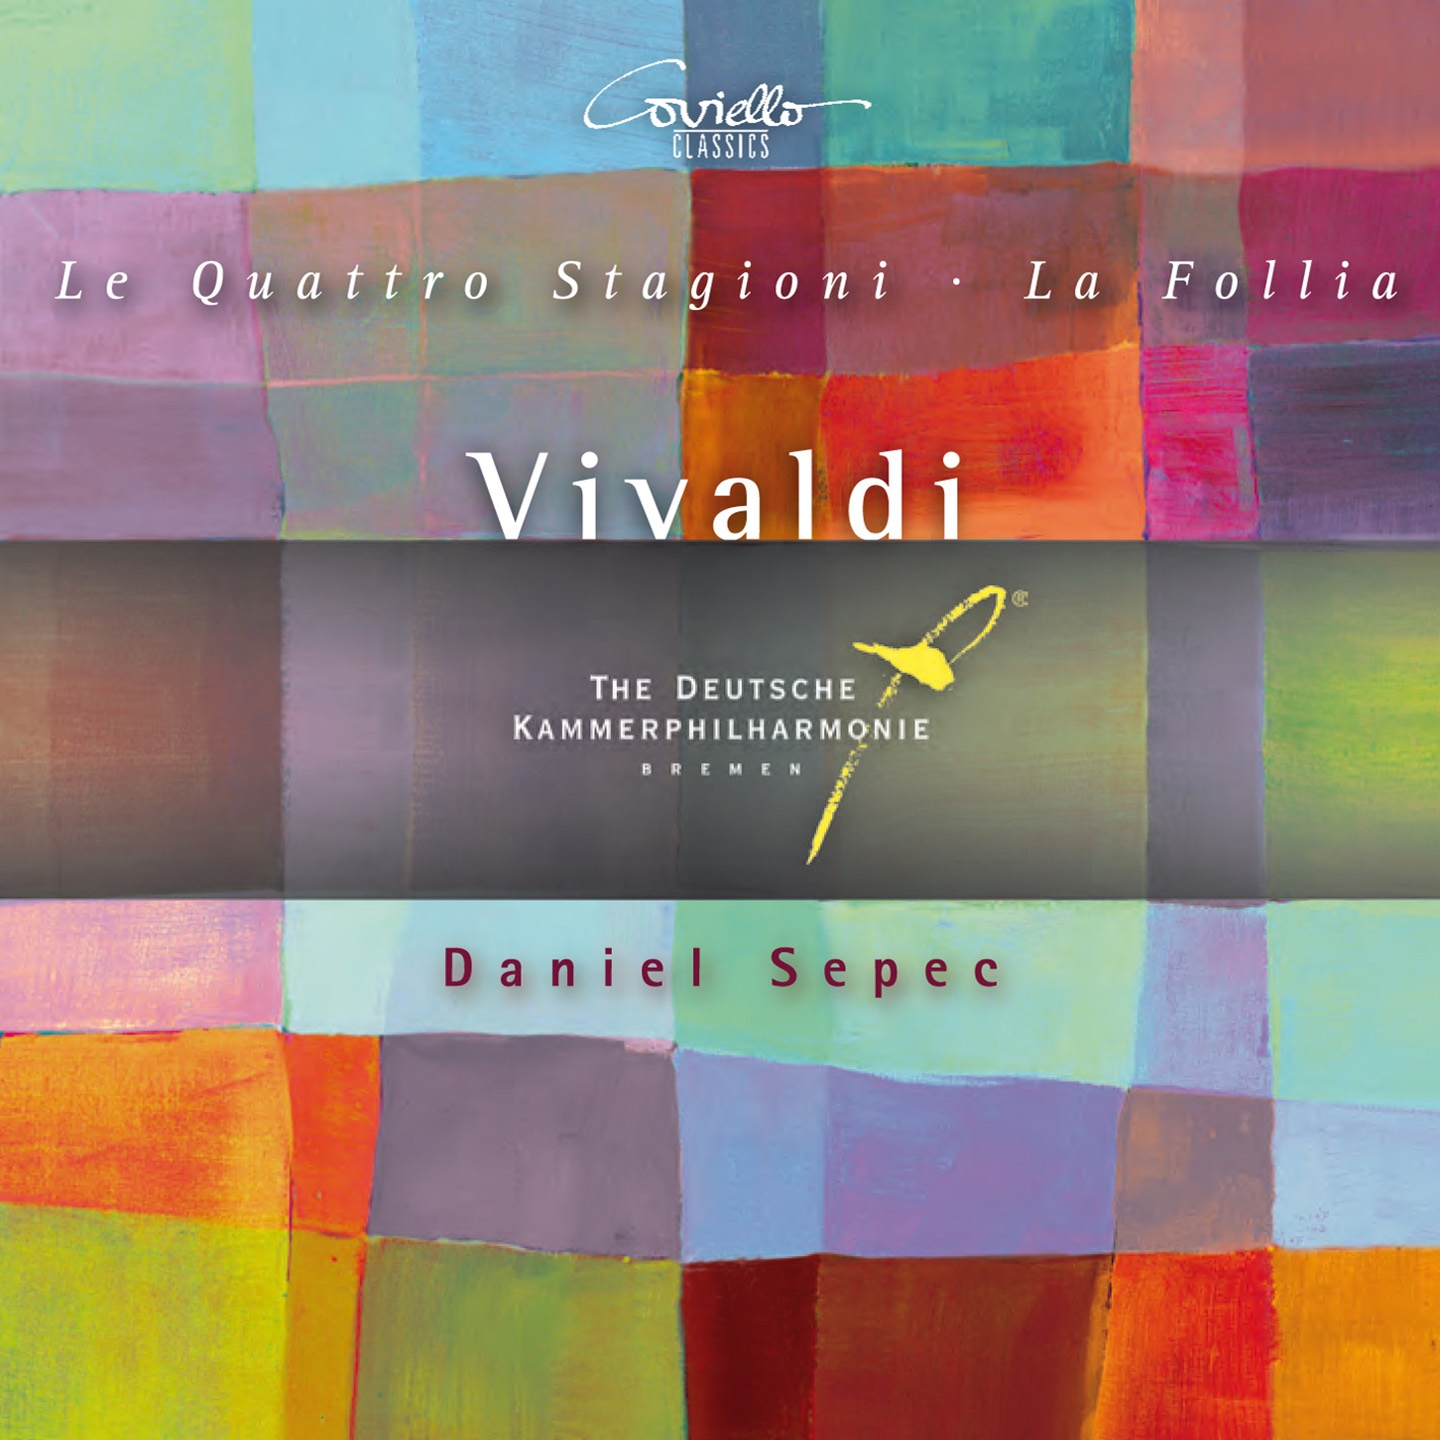 12 Trio Sonatas, Op. 1, No. 12 in D Minor, RV 63 "La follia"